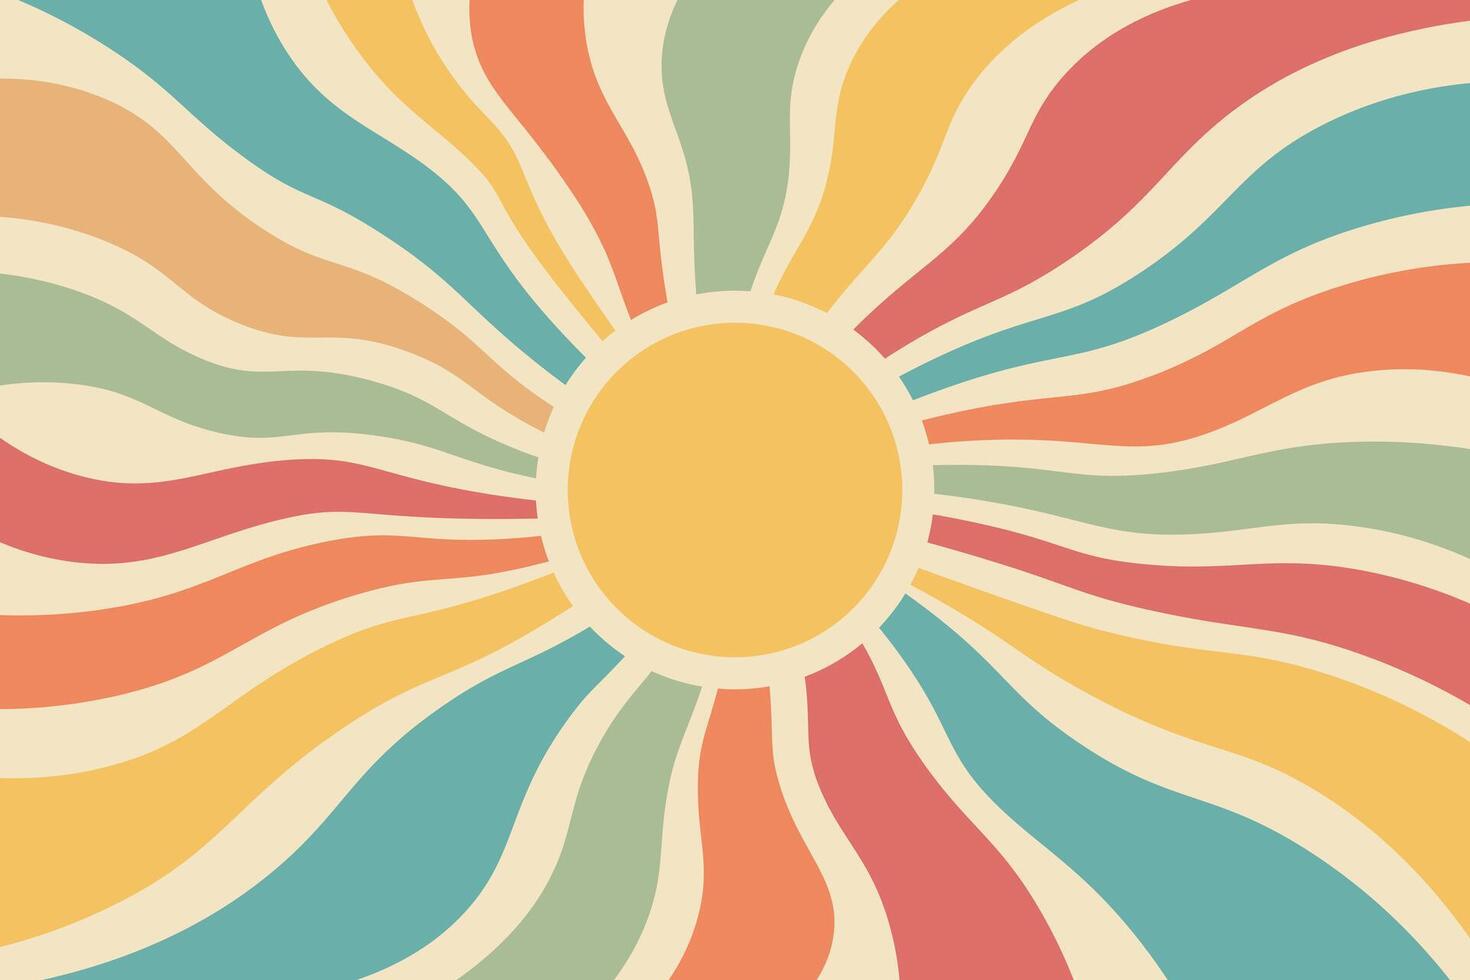 wijnoogst zonne- tapijtwerk in boho stijl. retro jaren 70 stijl muur, zonsopkomst regenboog. minimaal meetkundig abstract kunst. hippie Boheems decor. vector